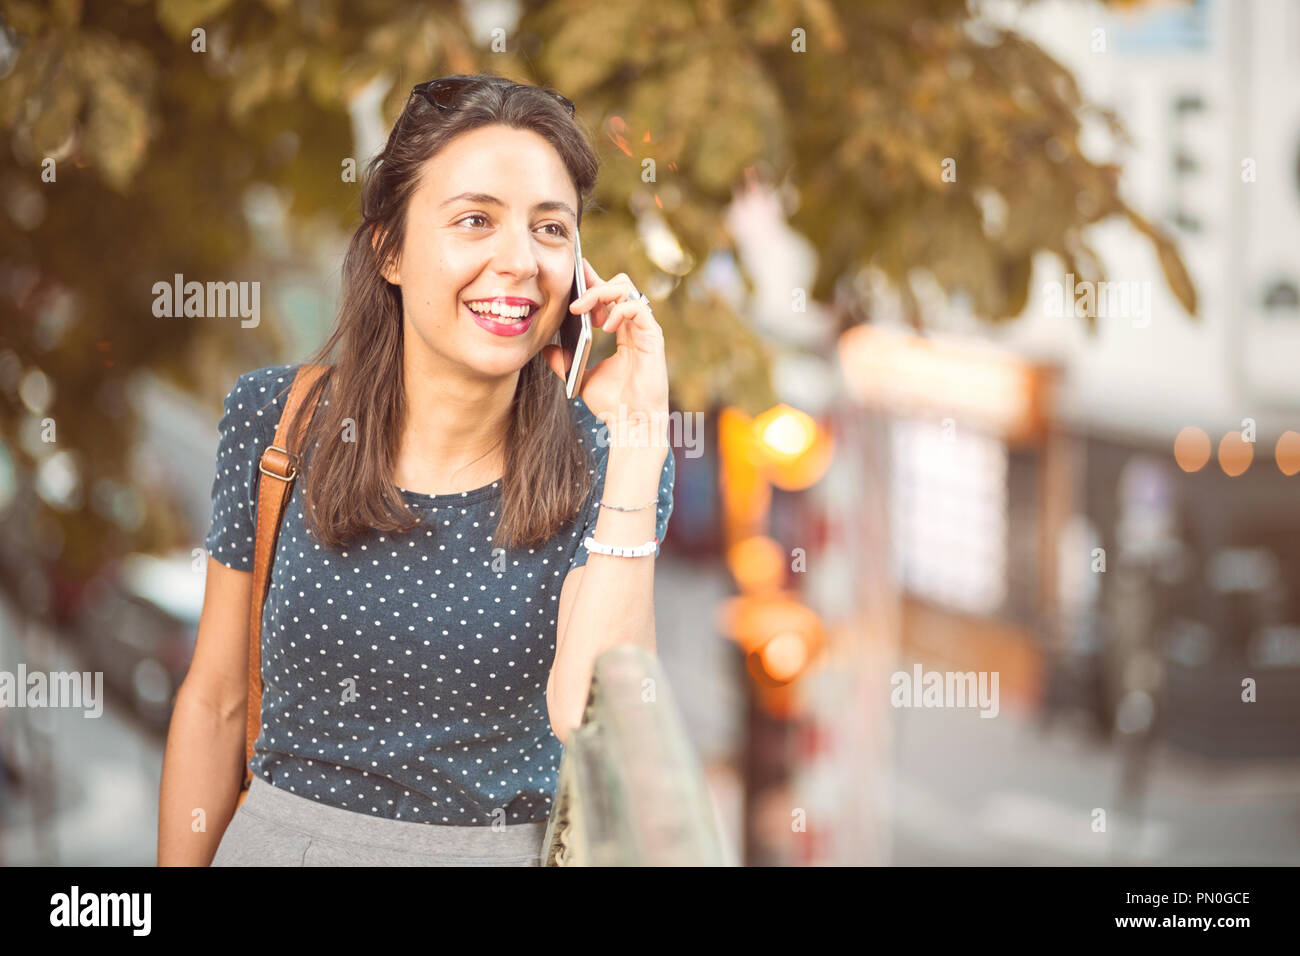 Jeune, souriant femme appelant sur un téléphone cellulaire Banque D'Images